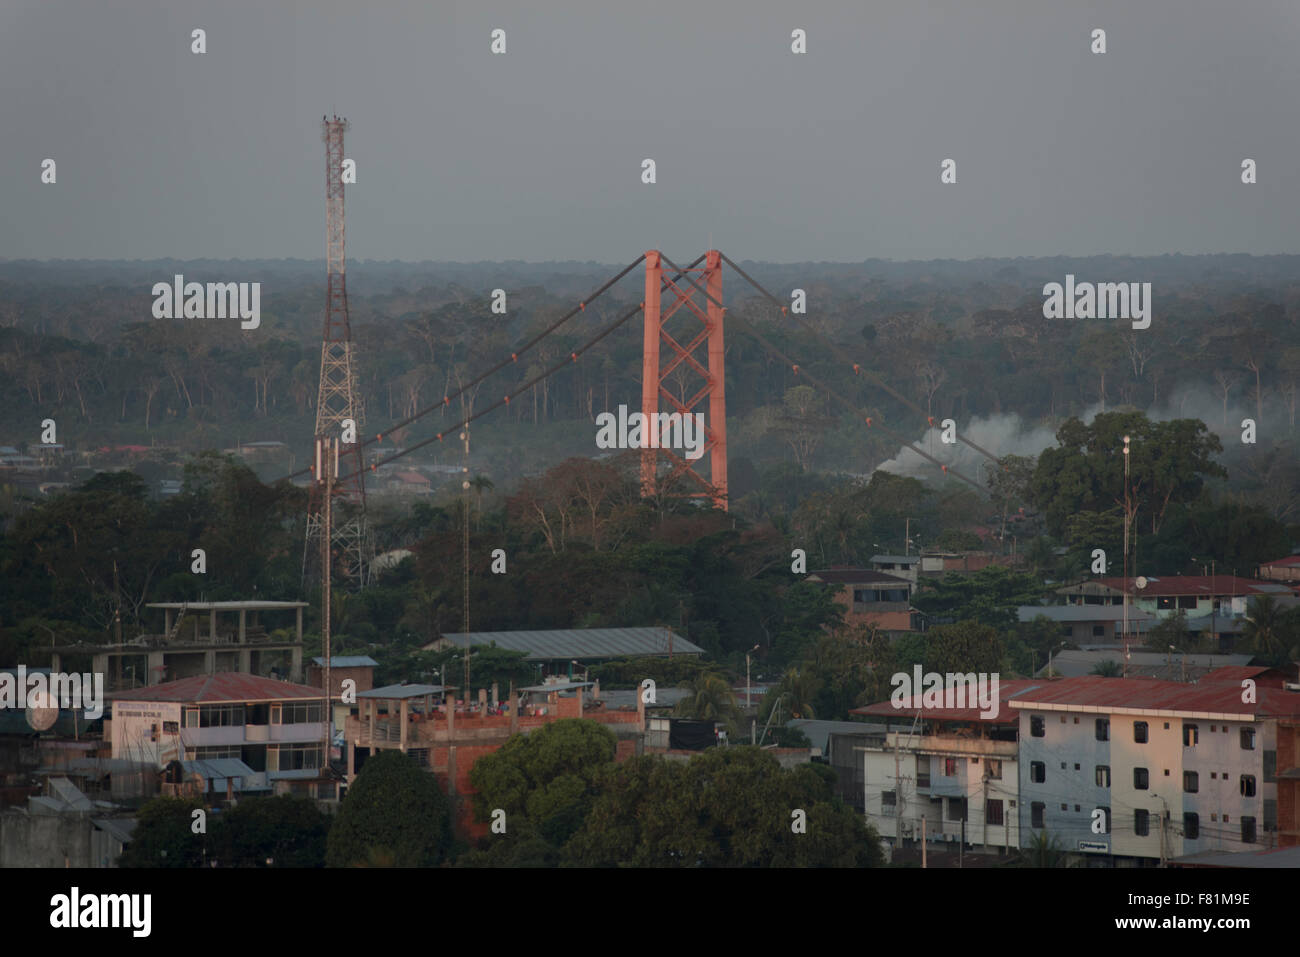 smoke haze from El Niño associated fires in Amazonia 2015, Puerto Maldonado, Madre de Dios, Peru Stock Photo